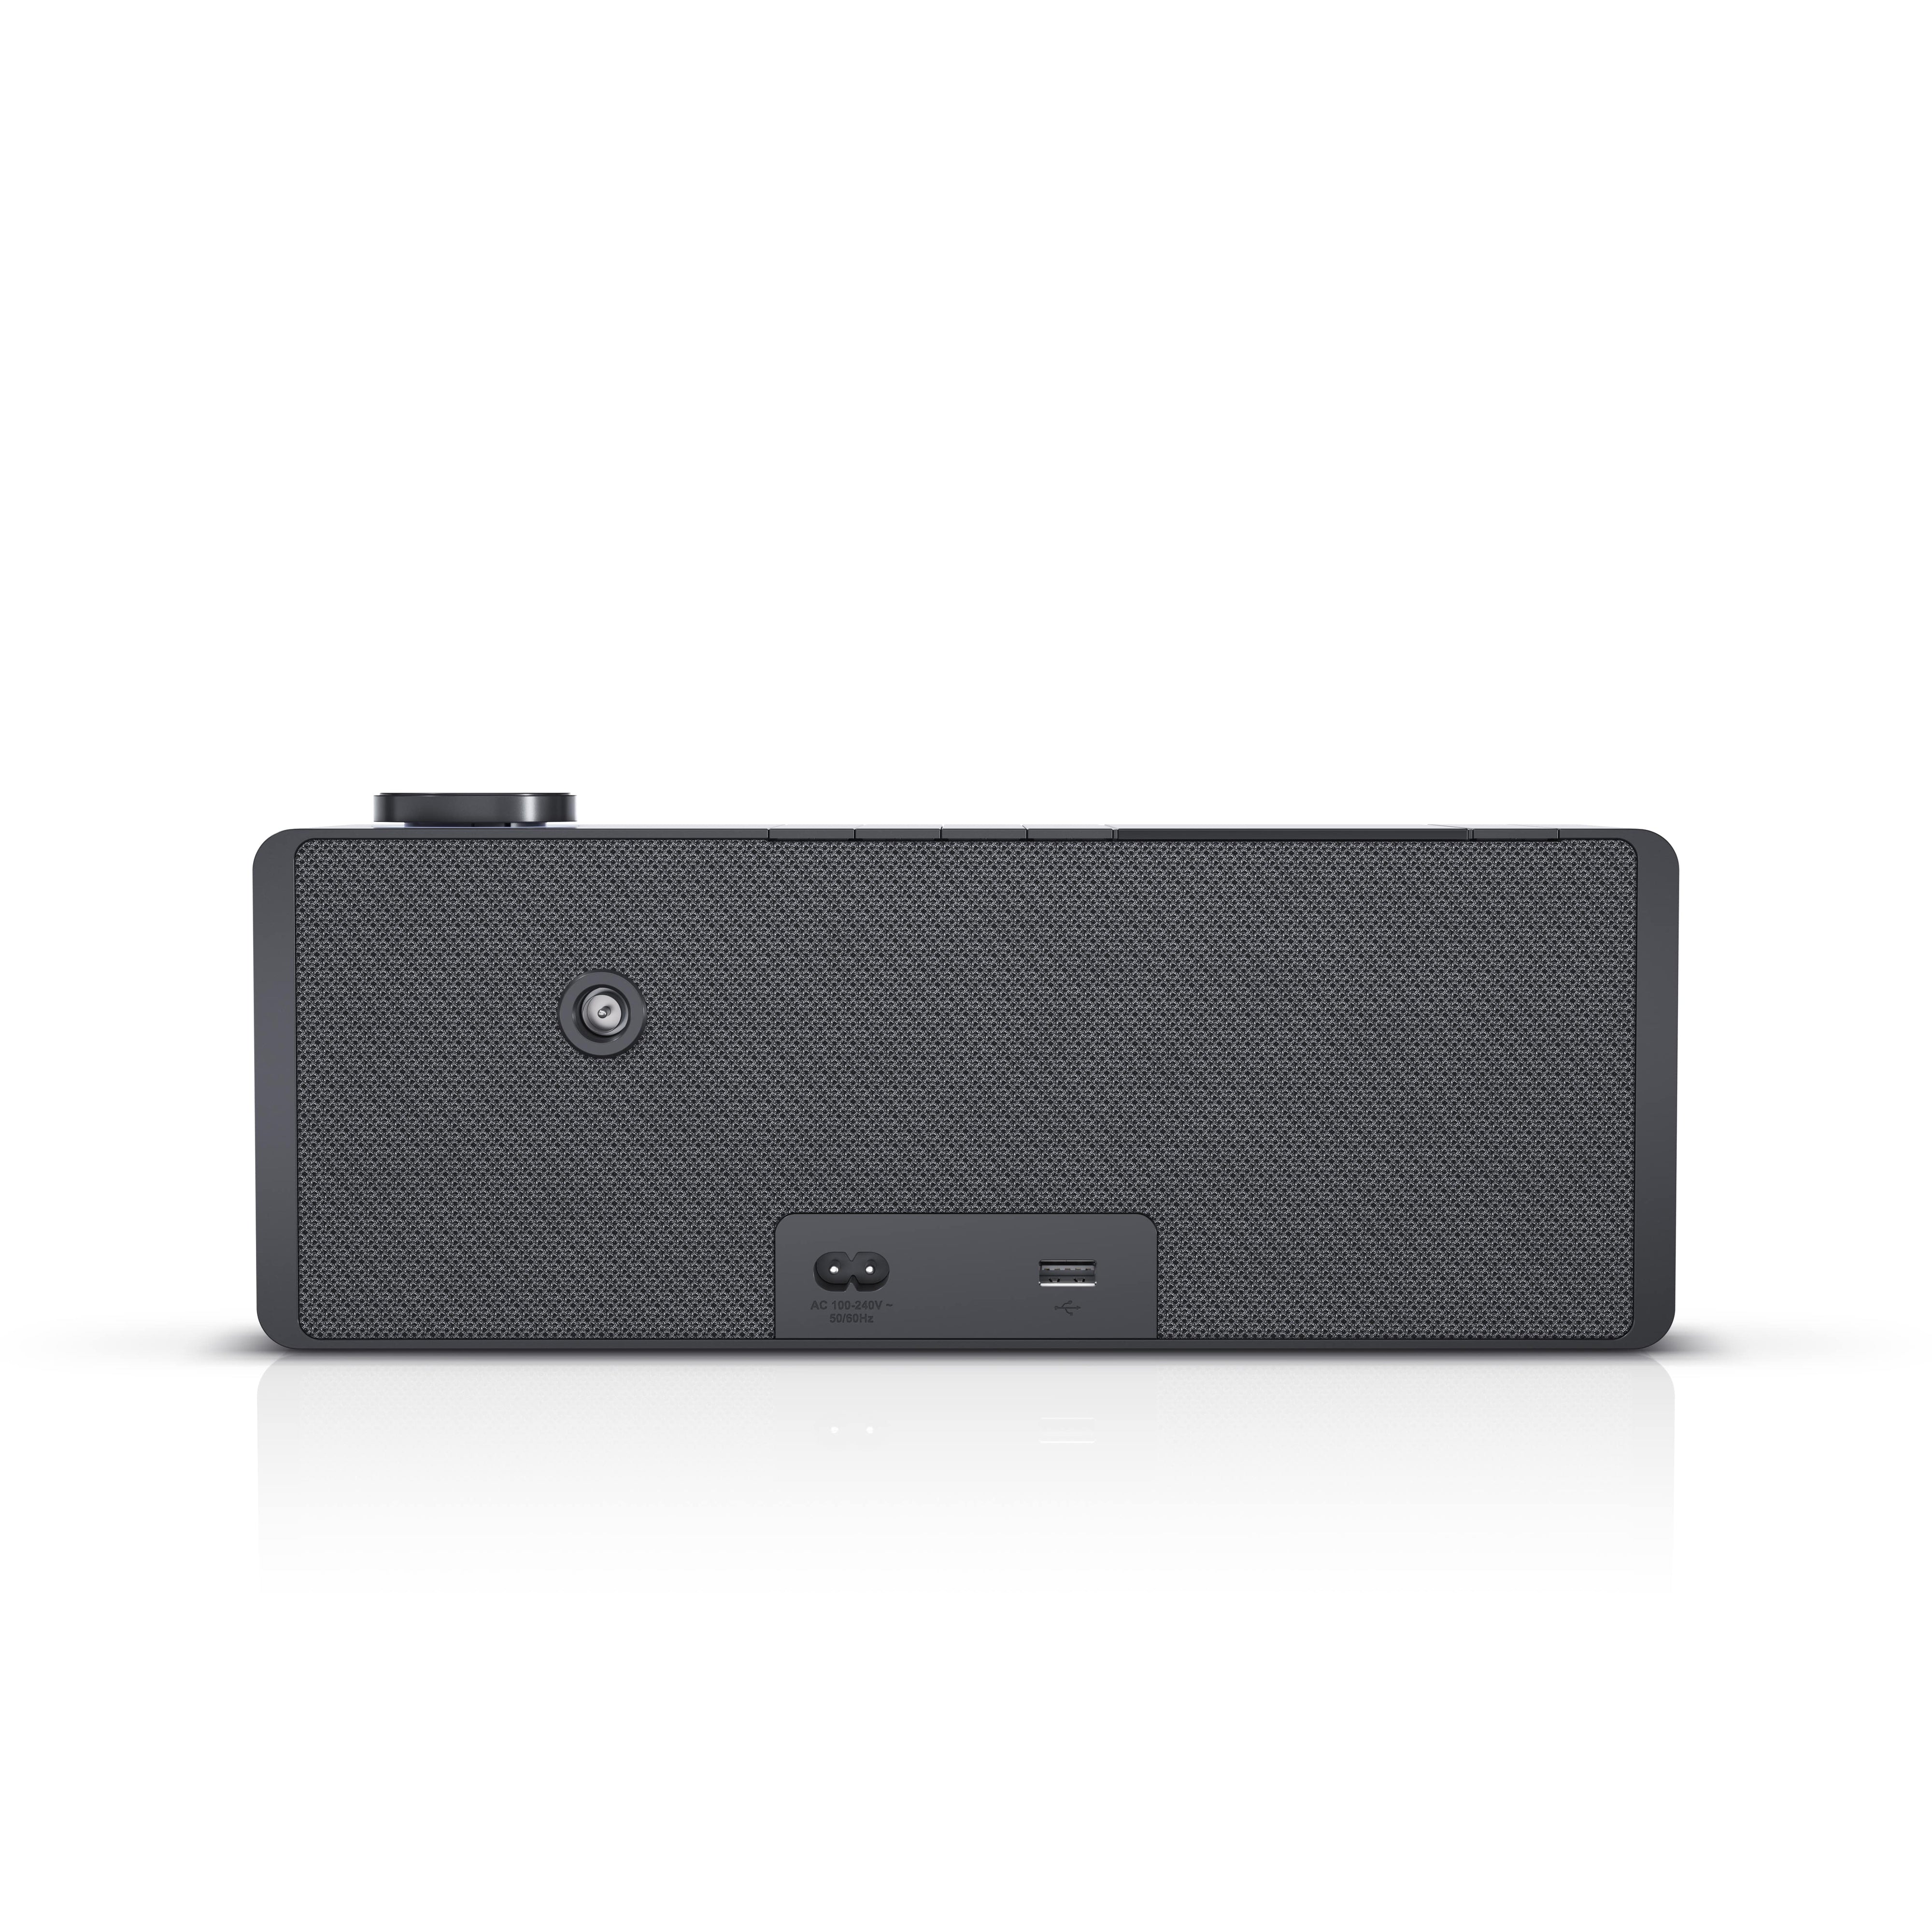 Loewe - Klang S1 - Wireless Bluetooth Speaker Australia